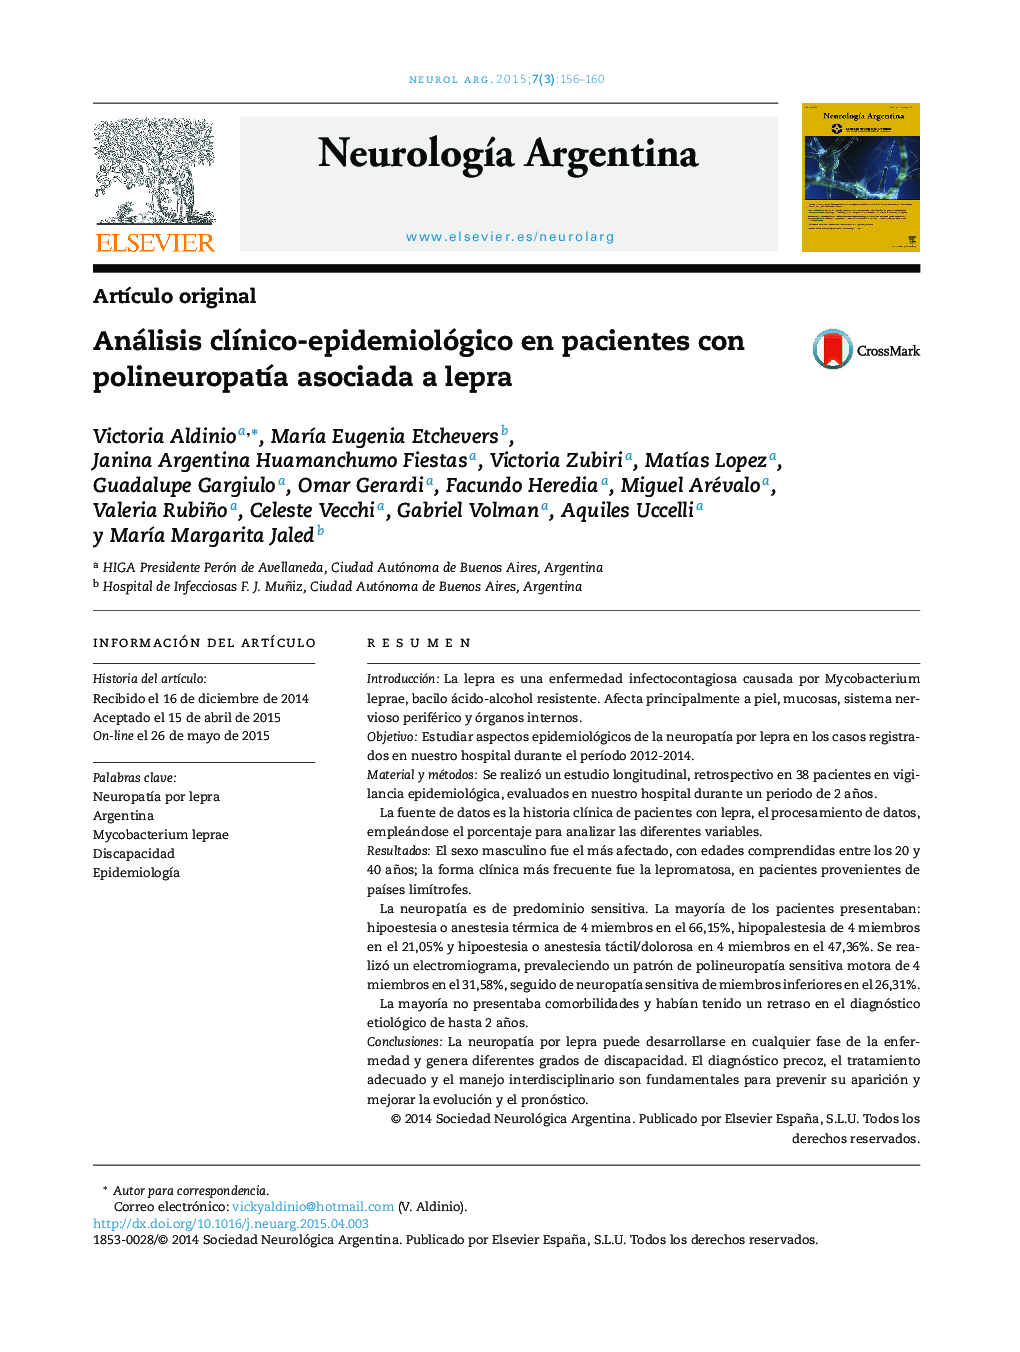 Análisis clínico-epidemiológico en pacientes con polineuropatía asociada a lepra